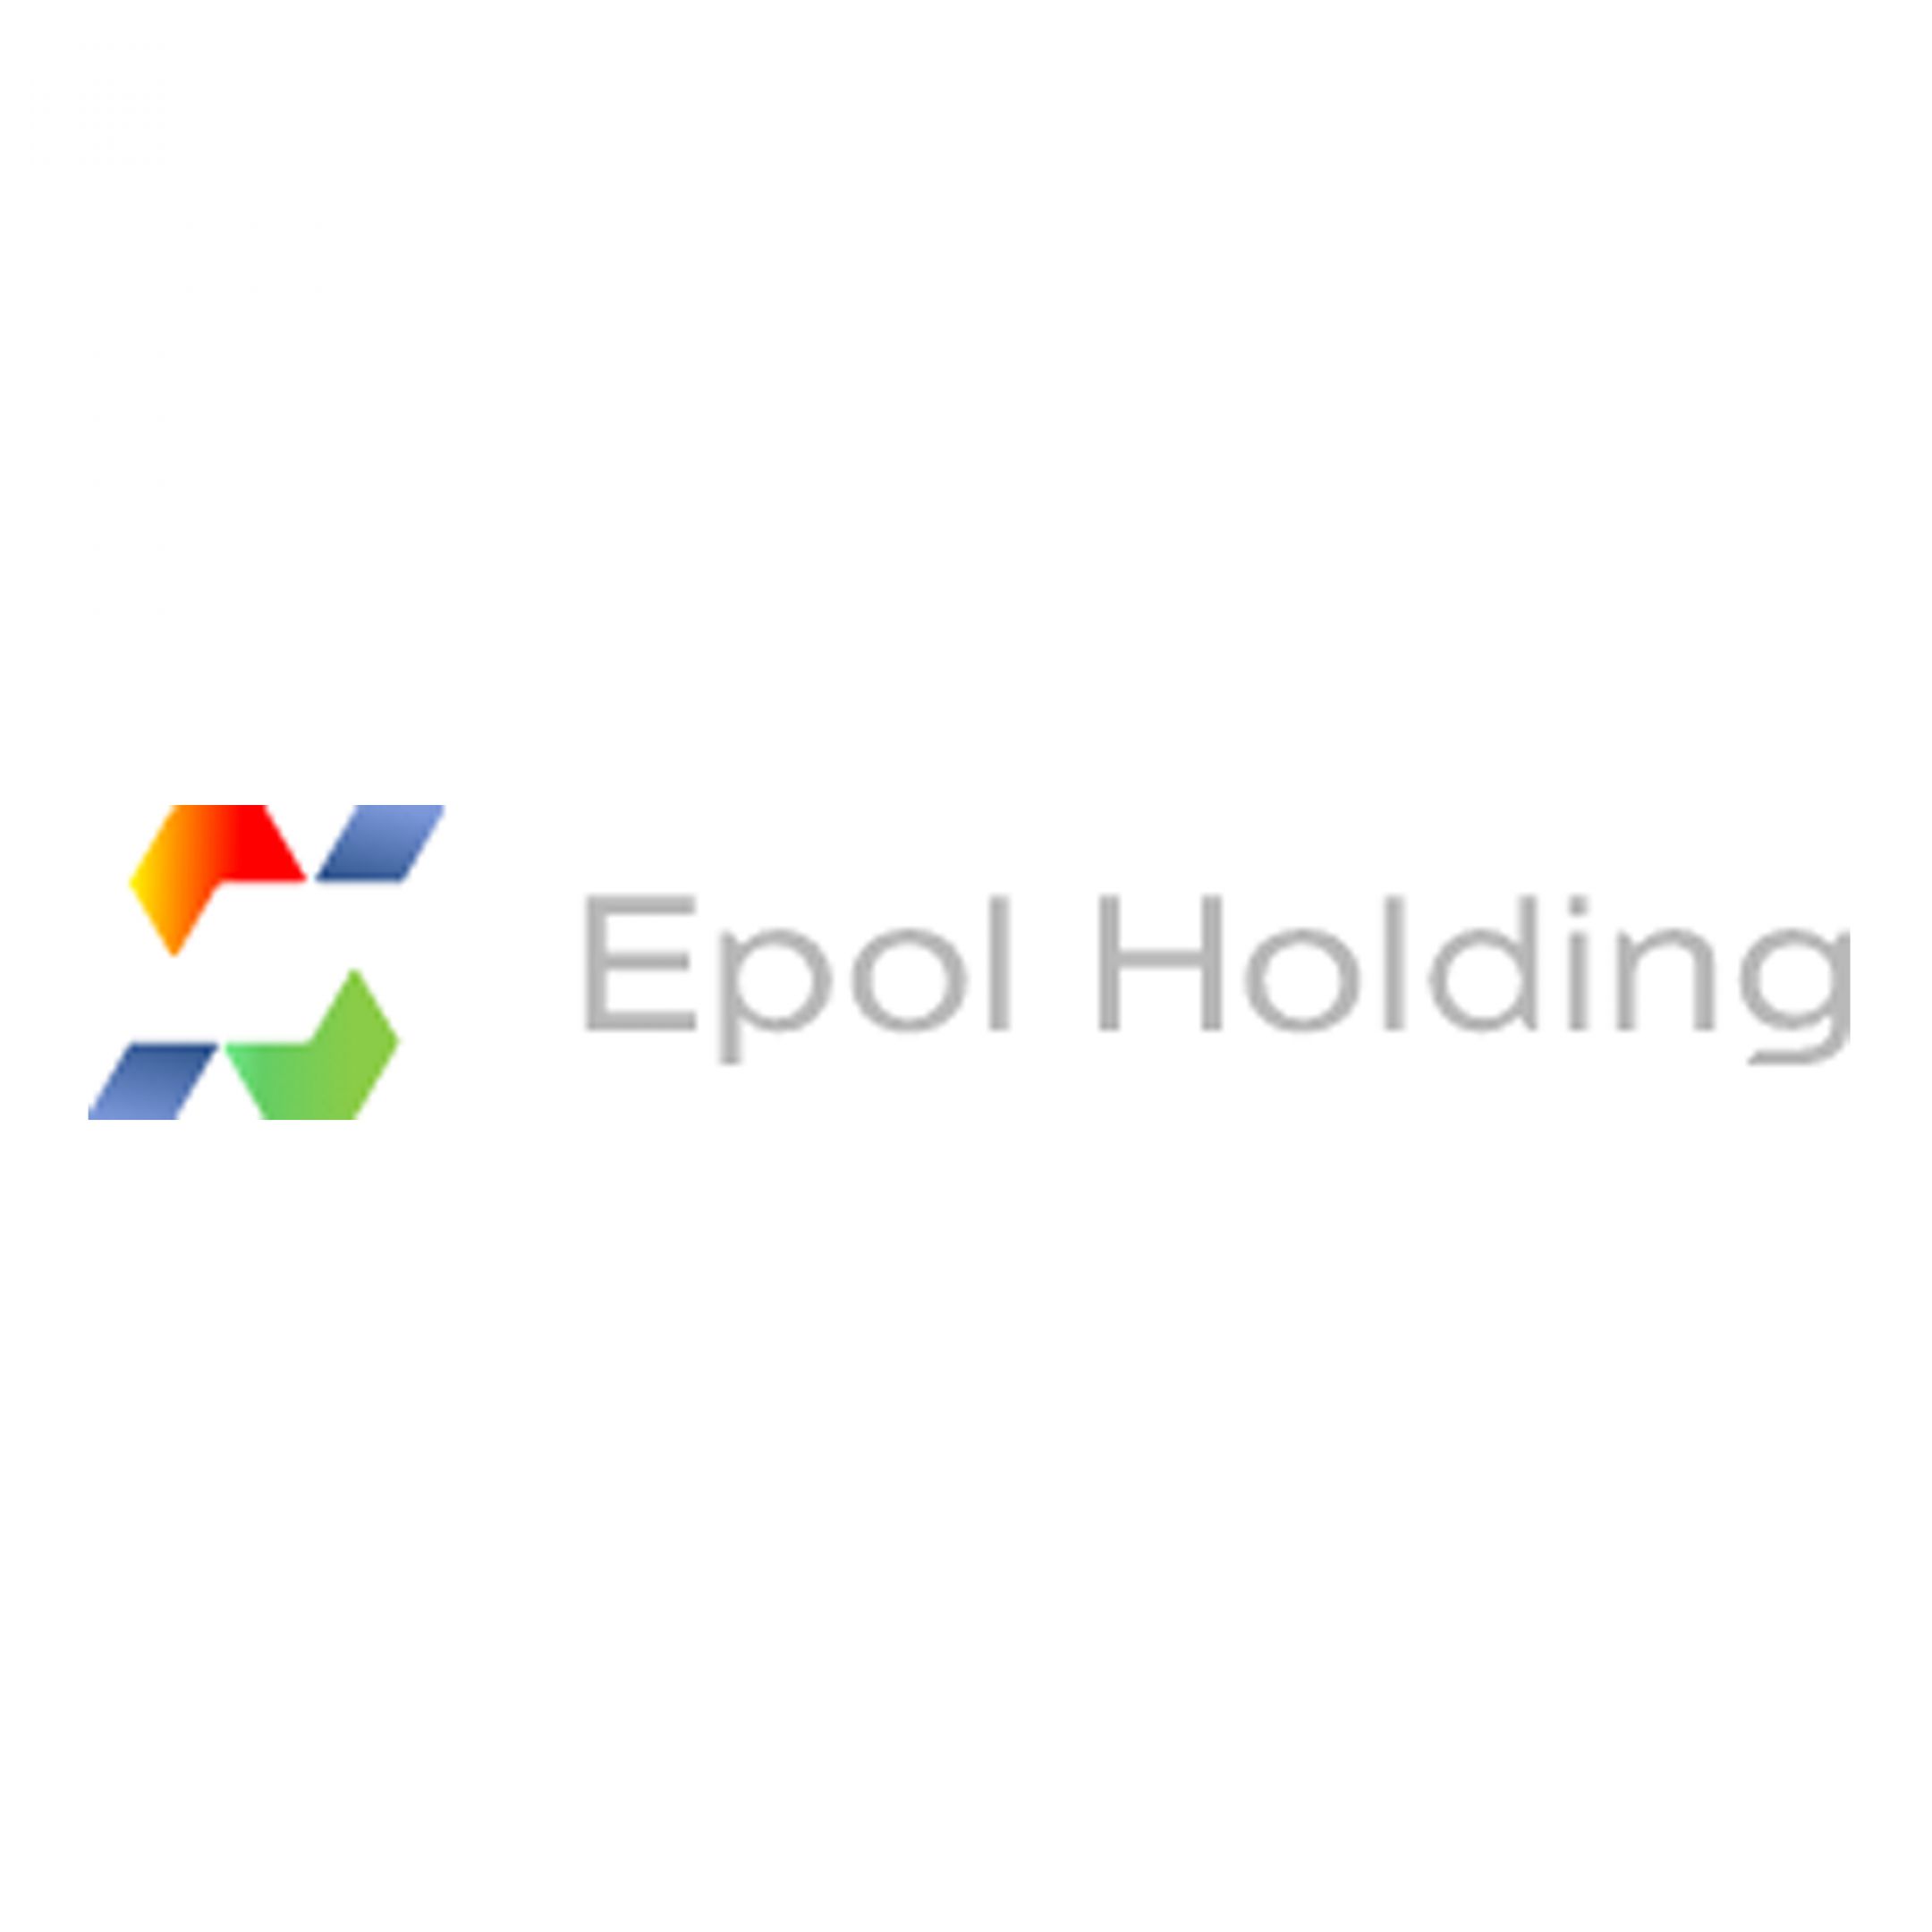 epol_holding.jpg